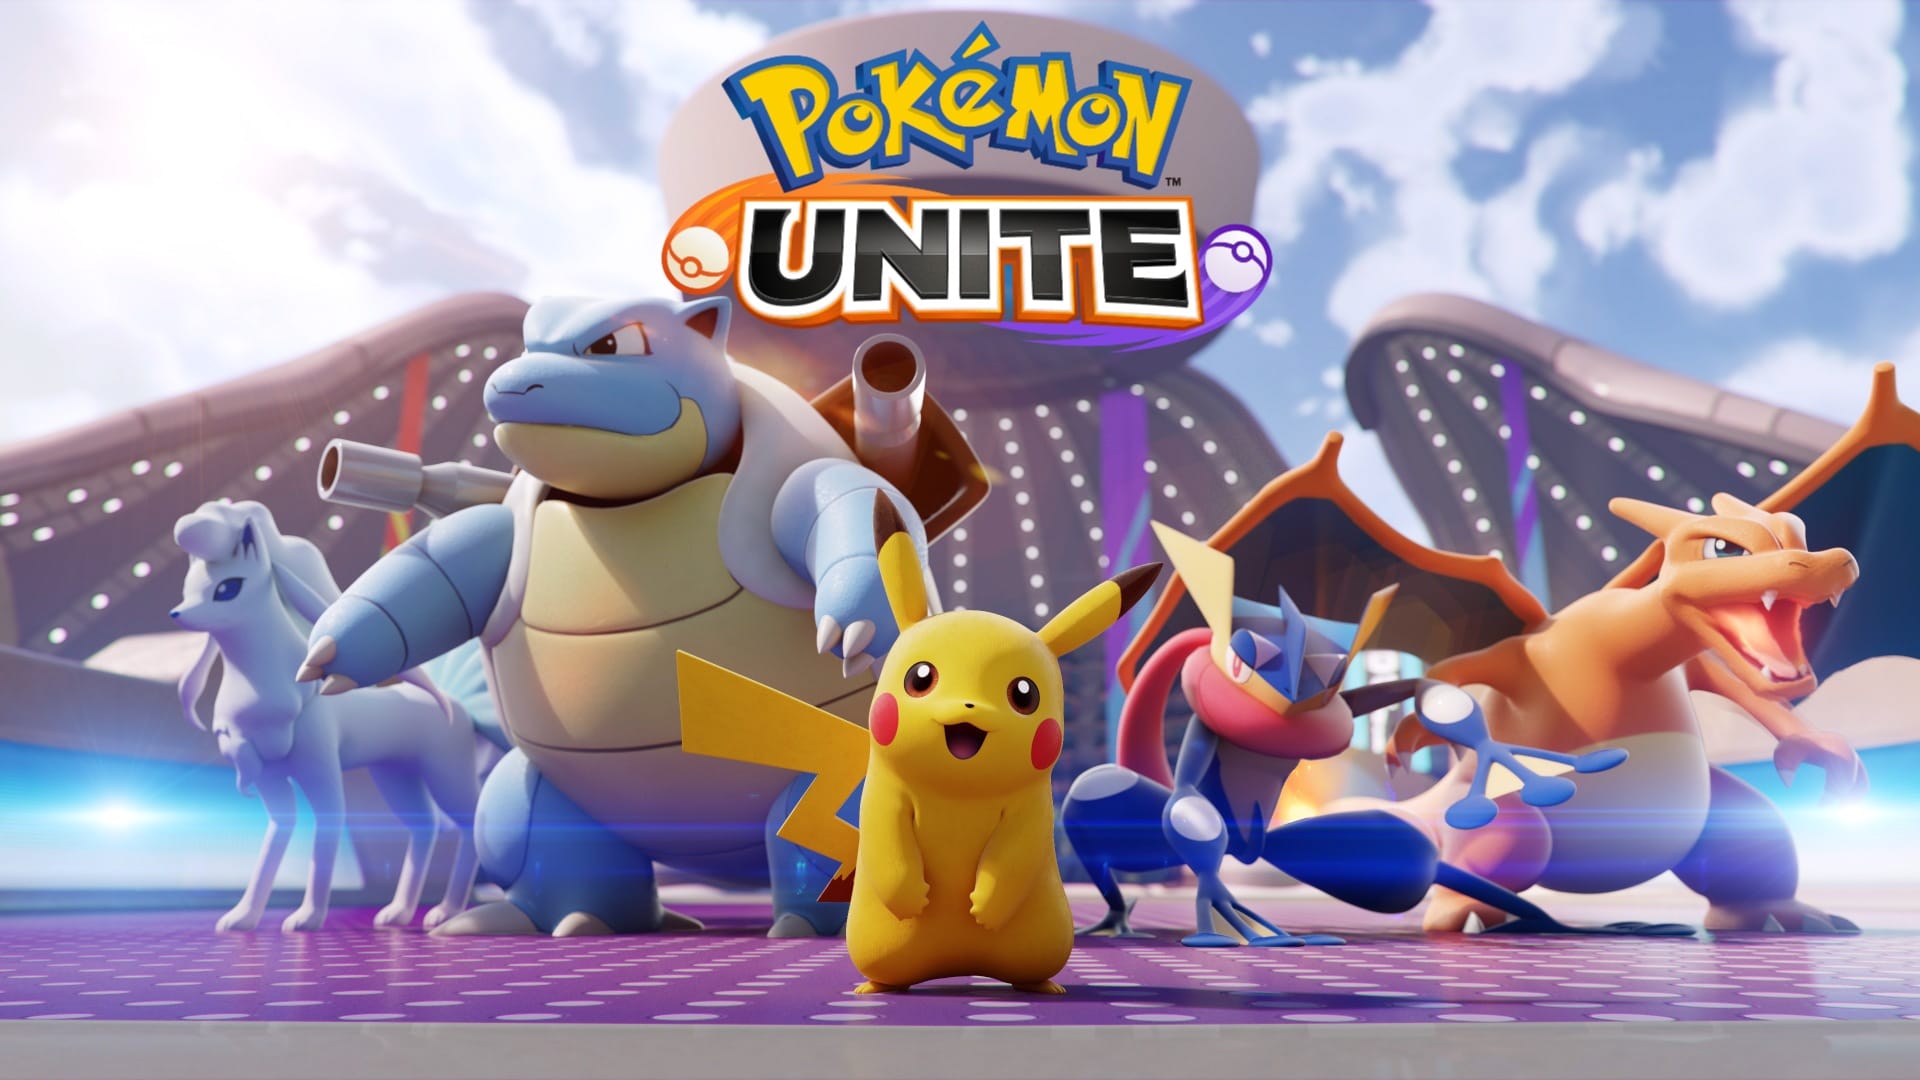 Different Pokemon in a cover picture of Pokemon Unite